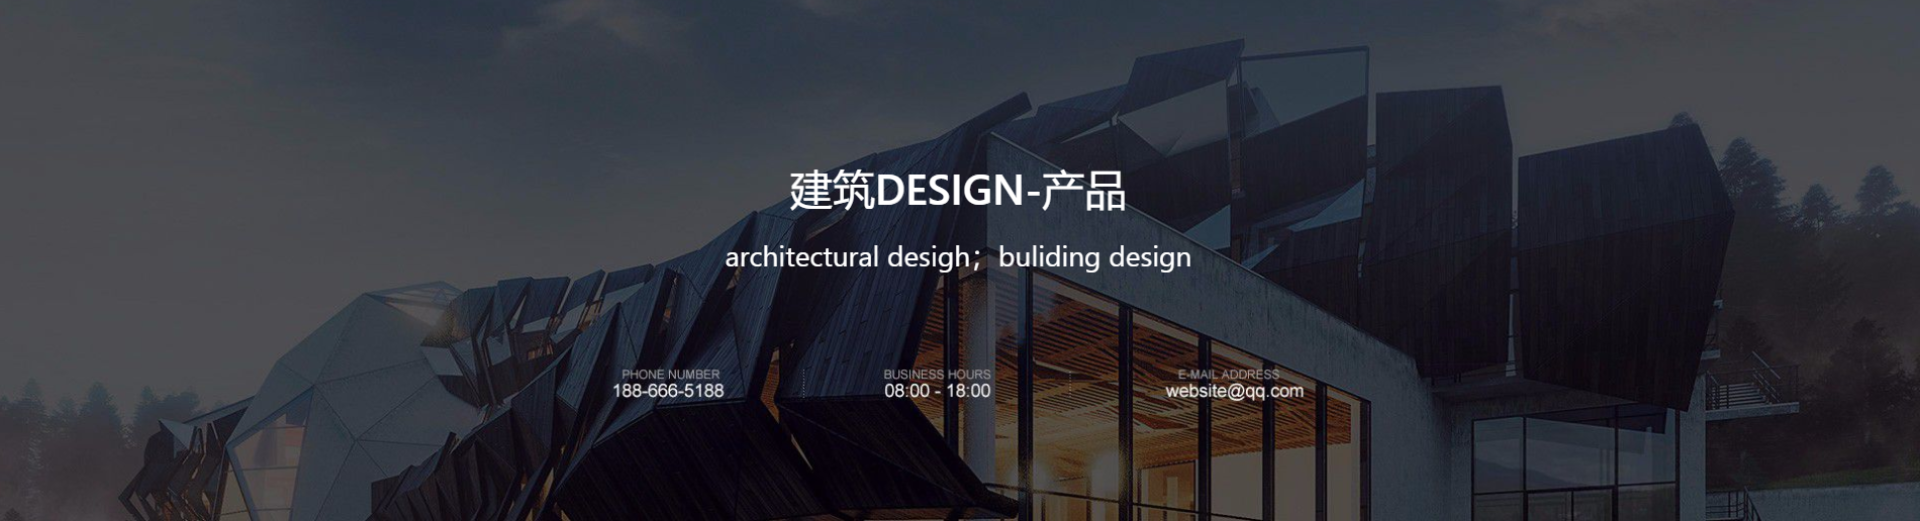 建筑装饰公司响应式网站模板案例